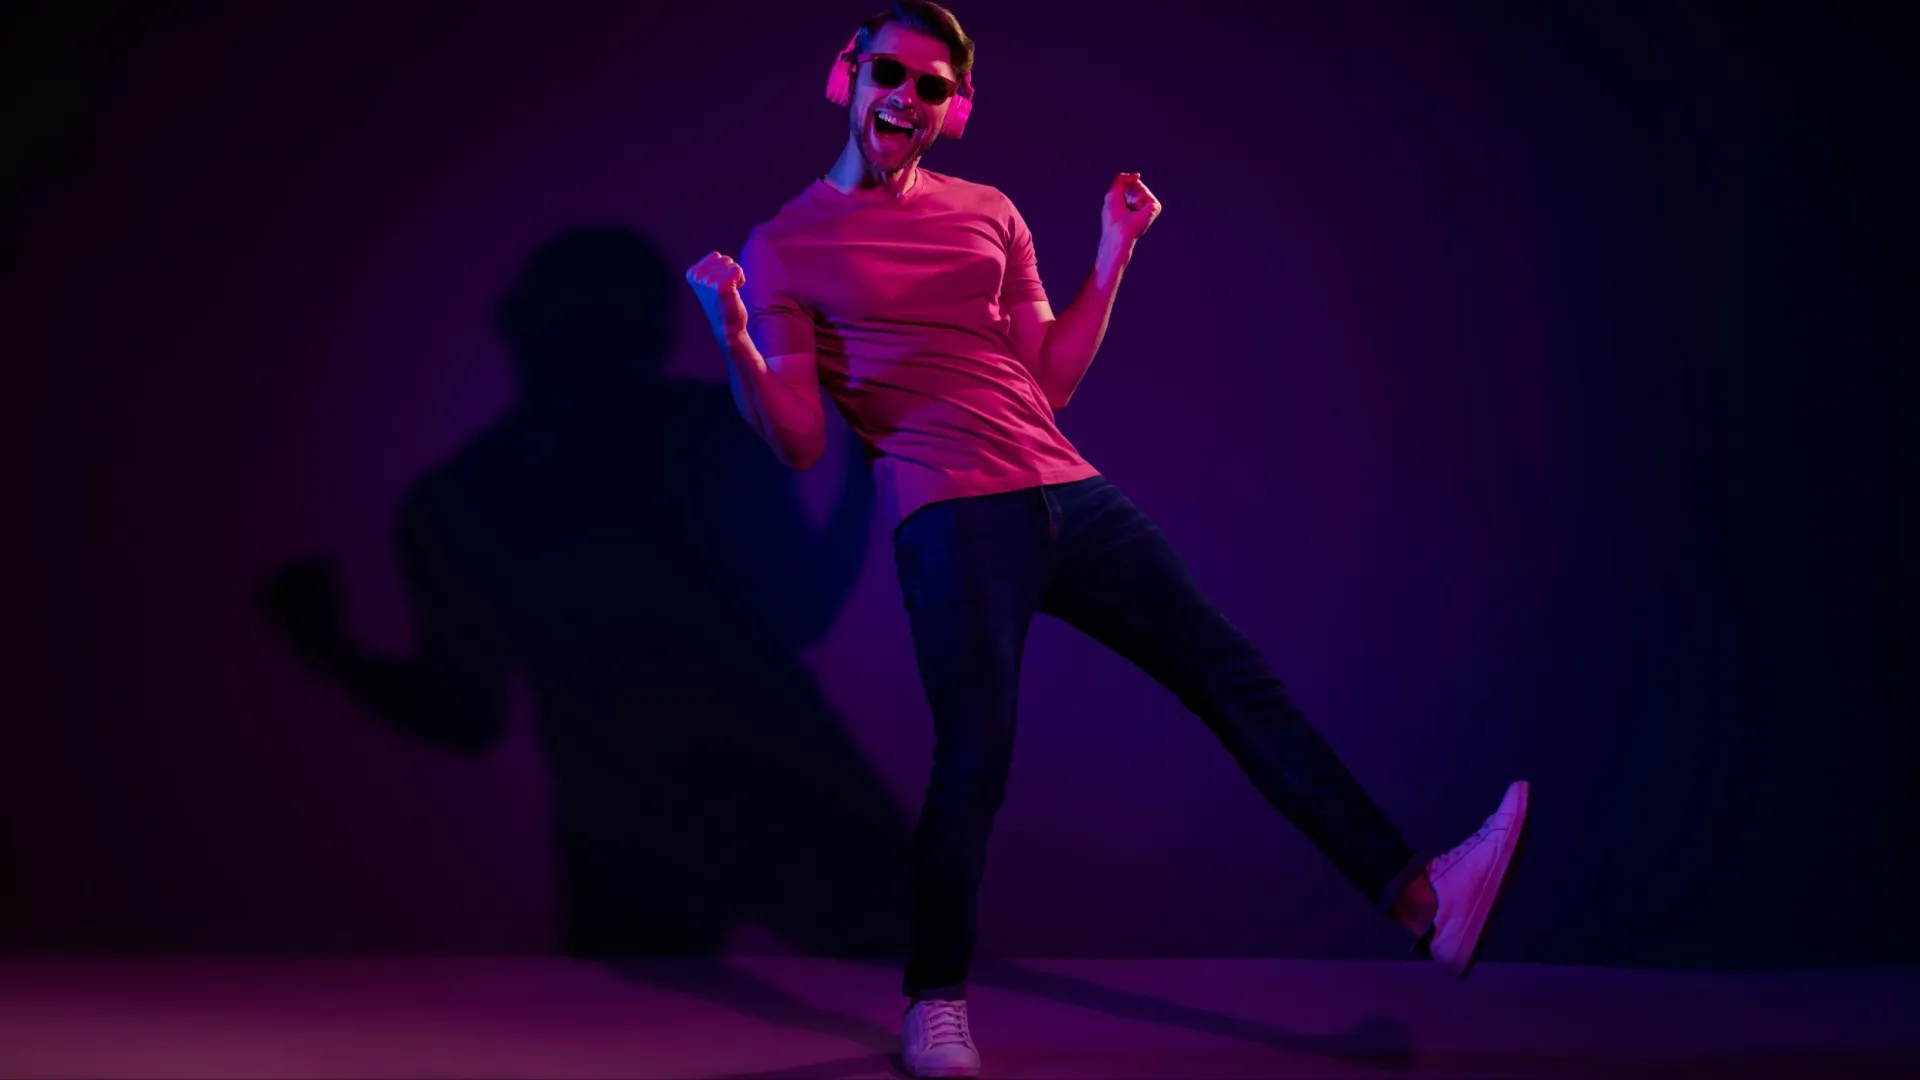 Мужчина в фиолетовом — сложный и непредсказуемый человек. Фото: Roman Samborskyi / Shutterstock / Fotodom